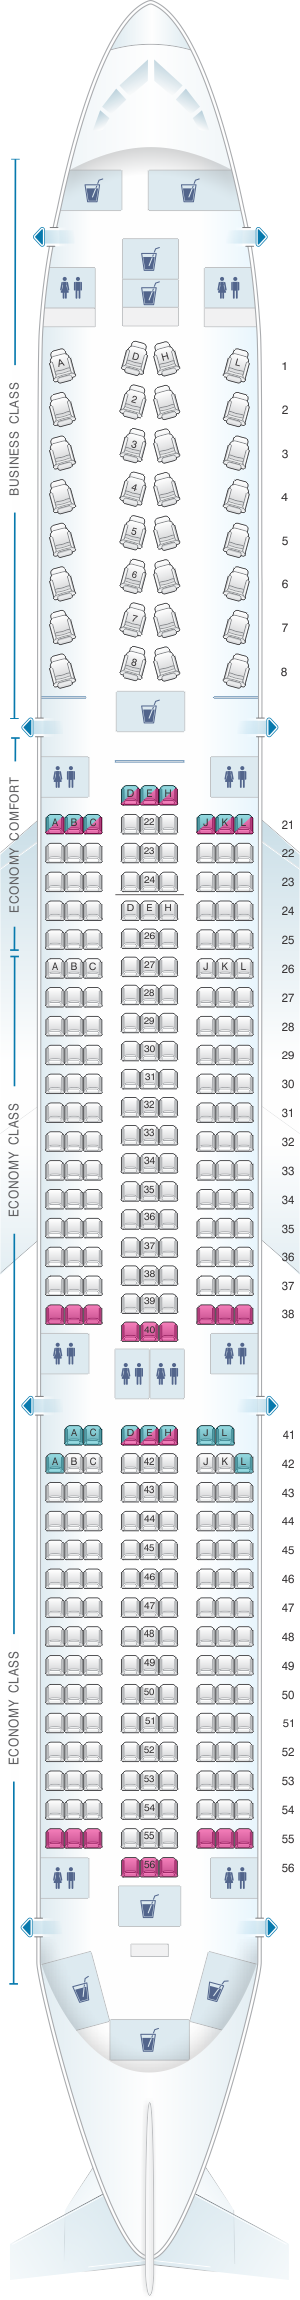 Finnair Airbus A350 Seat Map My Xxx Hot Girl